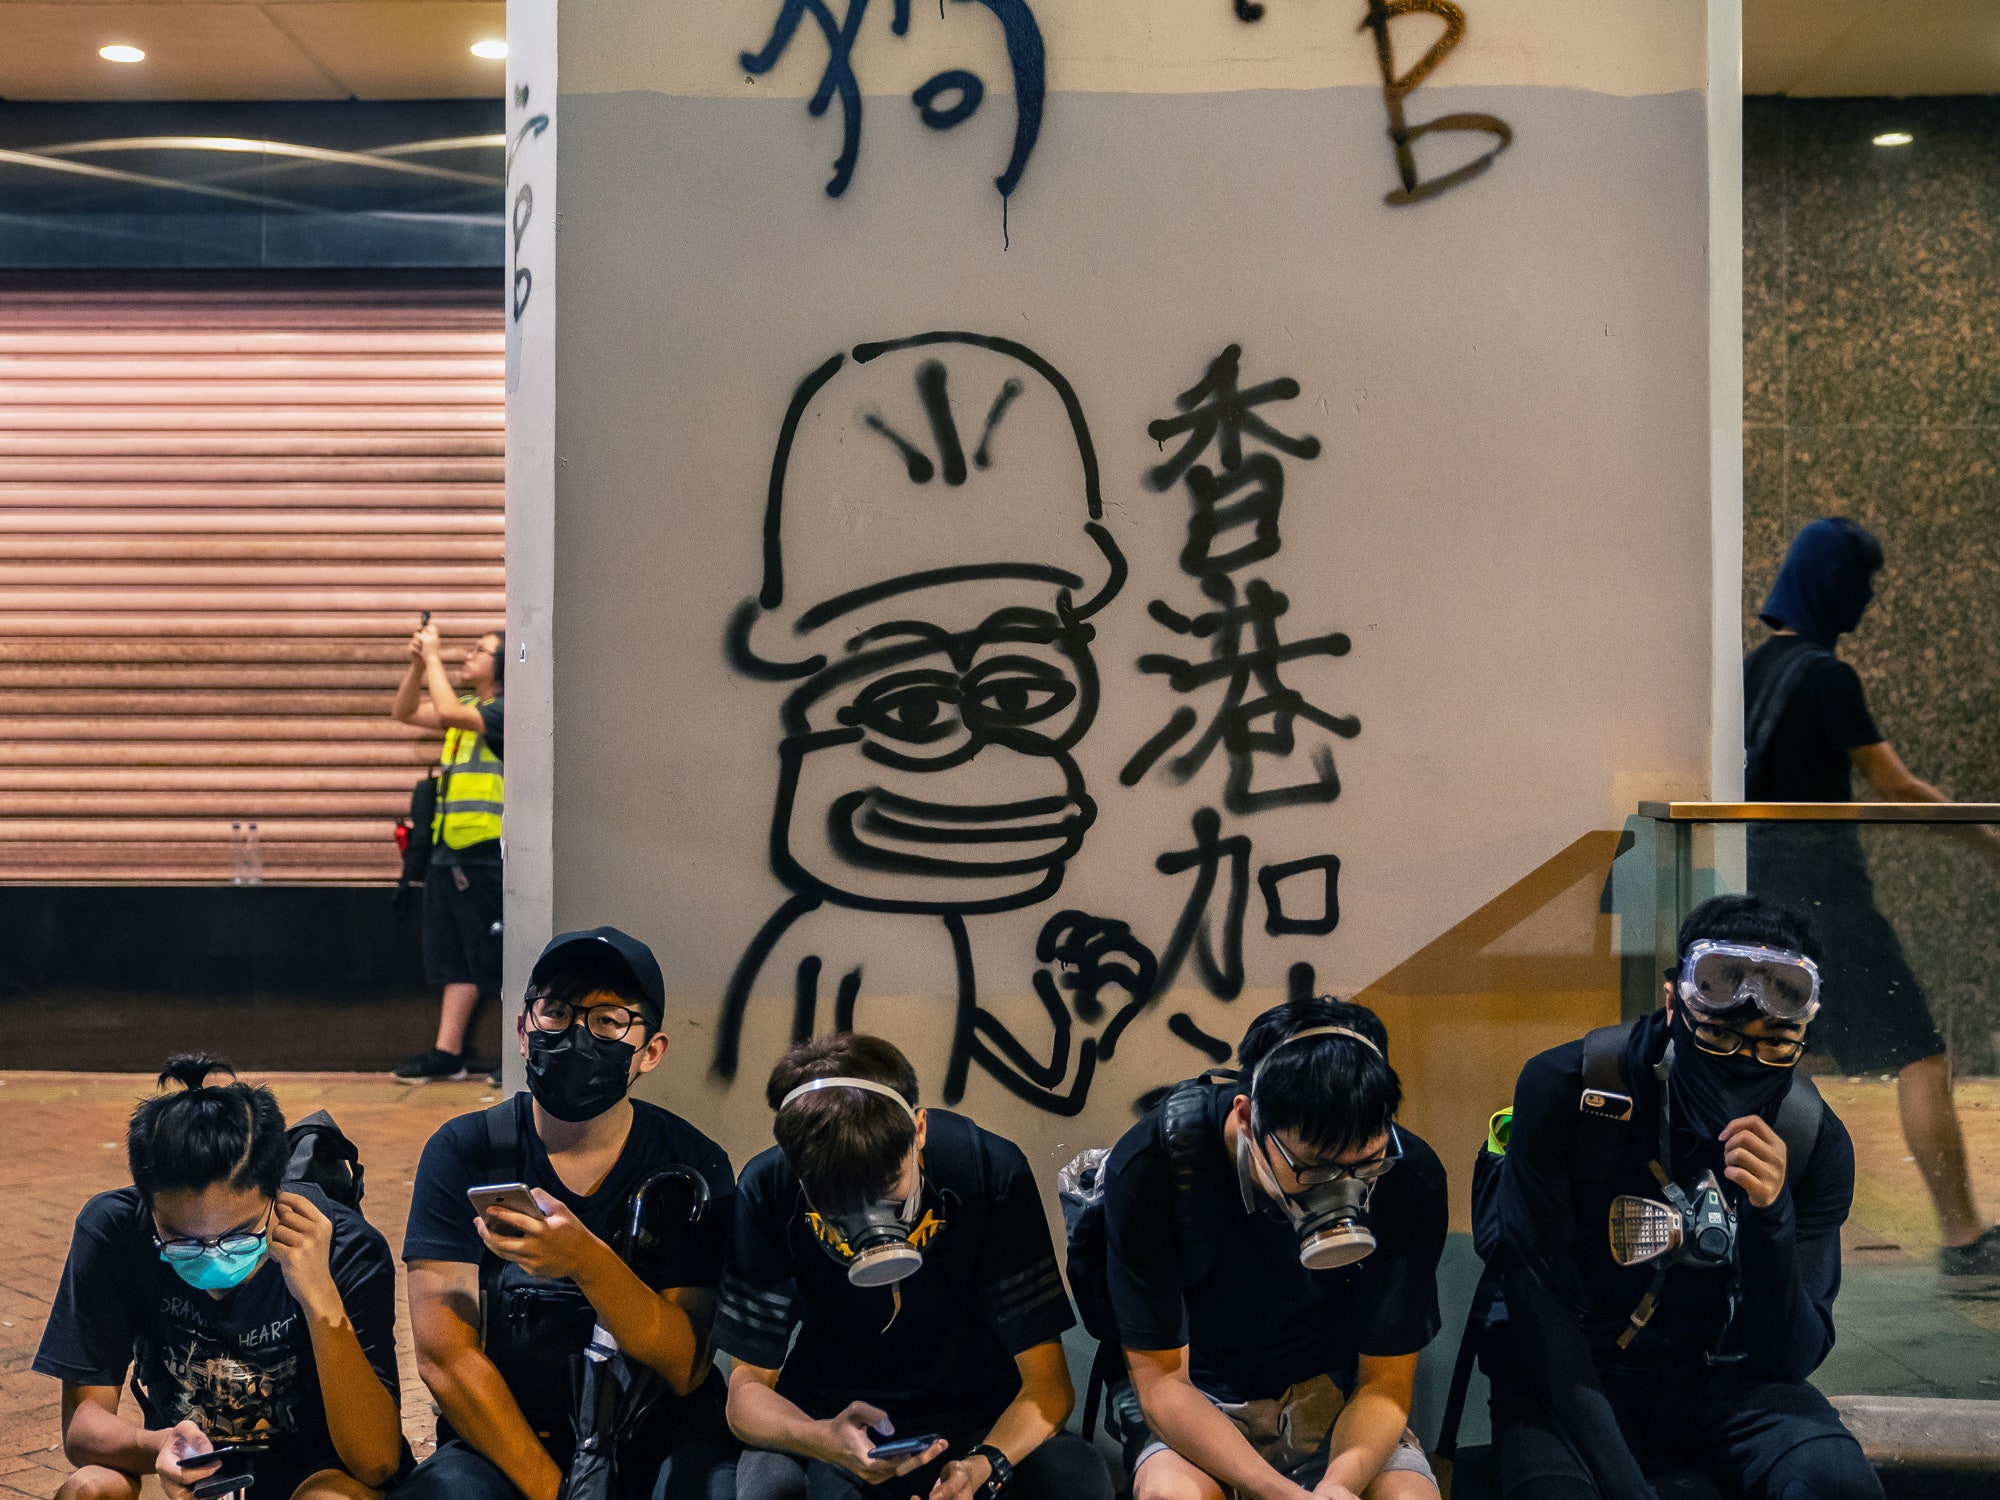 HK protestors sit in front of Pepe graffiti.